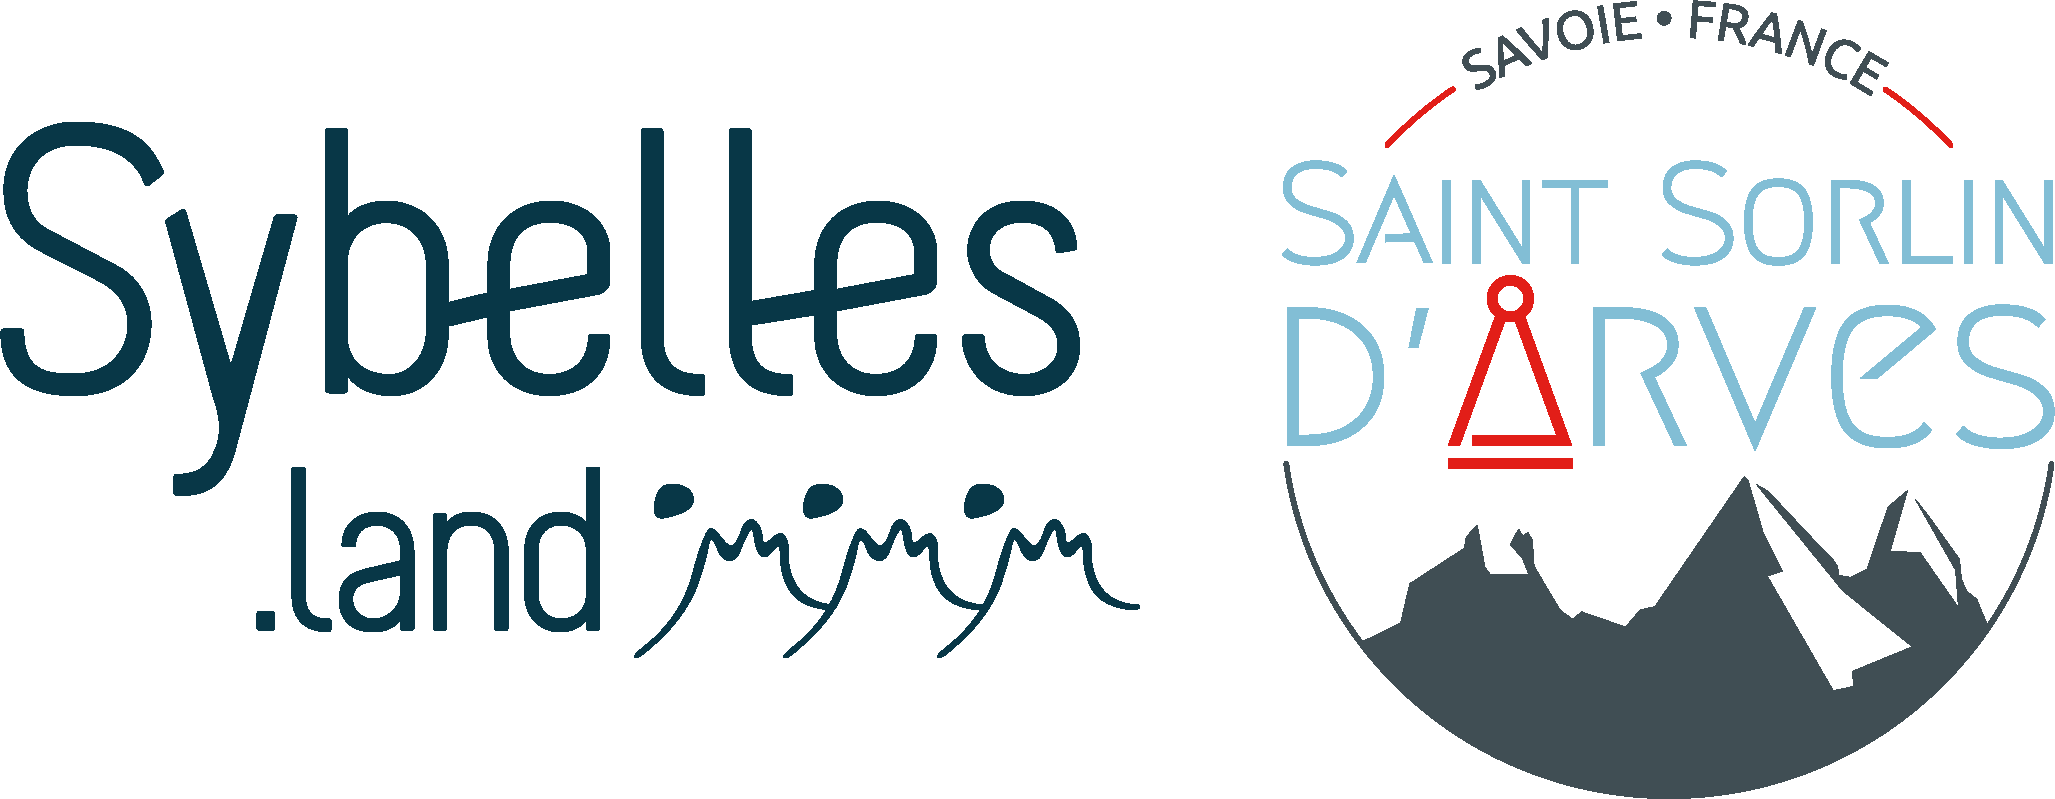 logo-saintsorlindarves-central